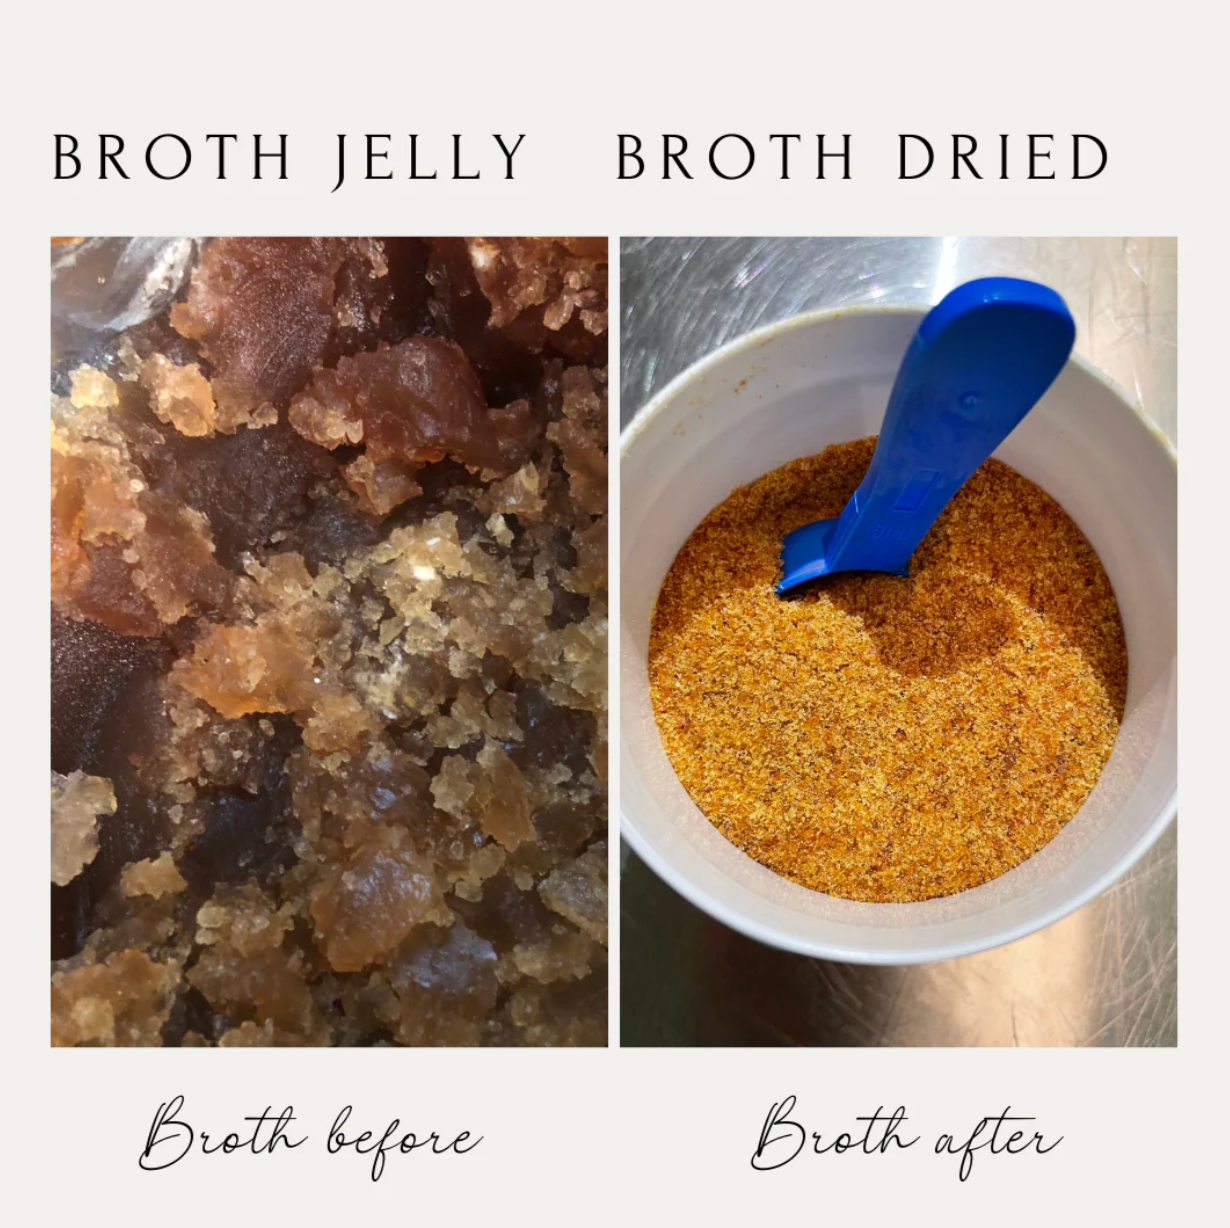 Boil & Broth Bone Broth Powder